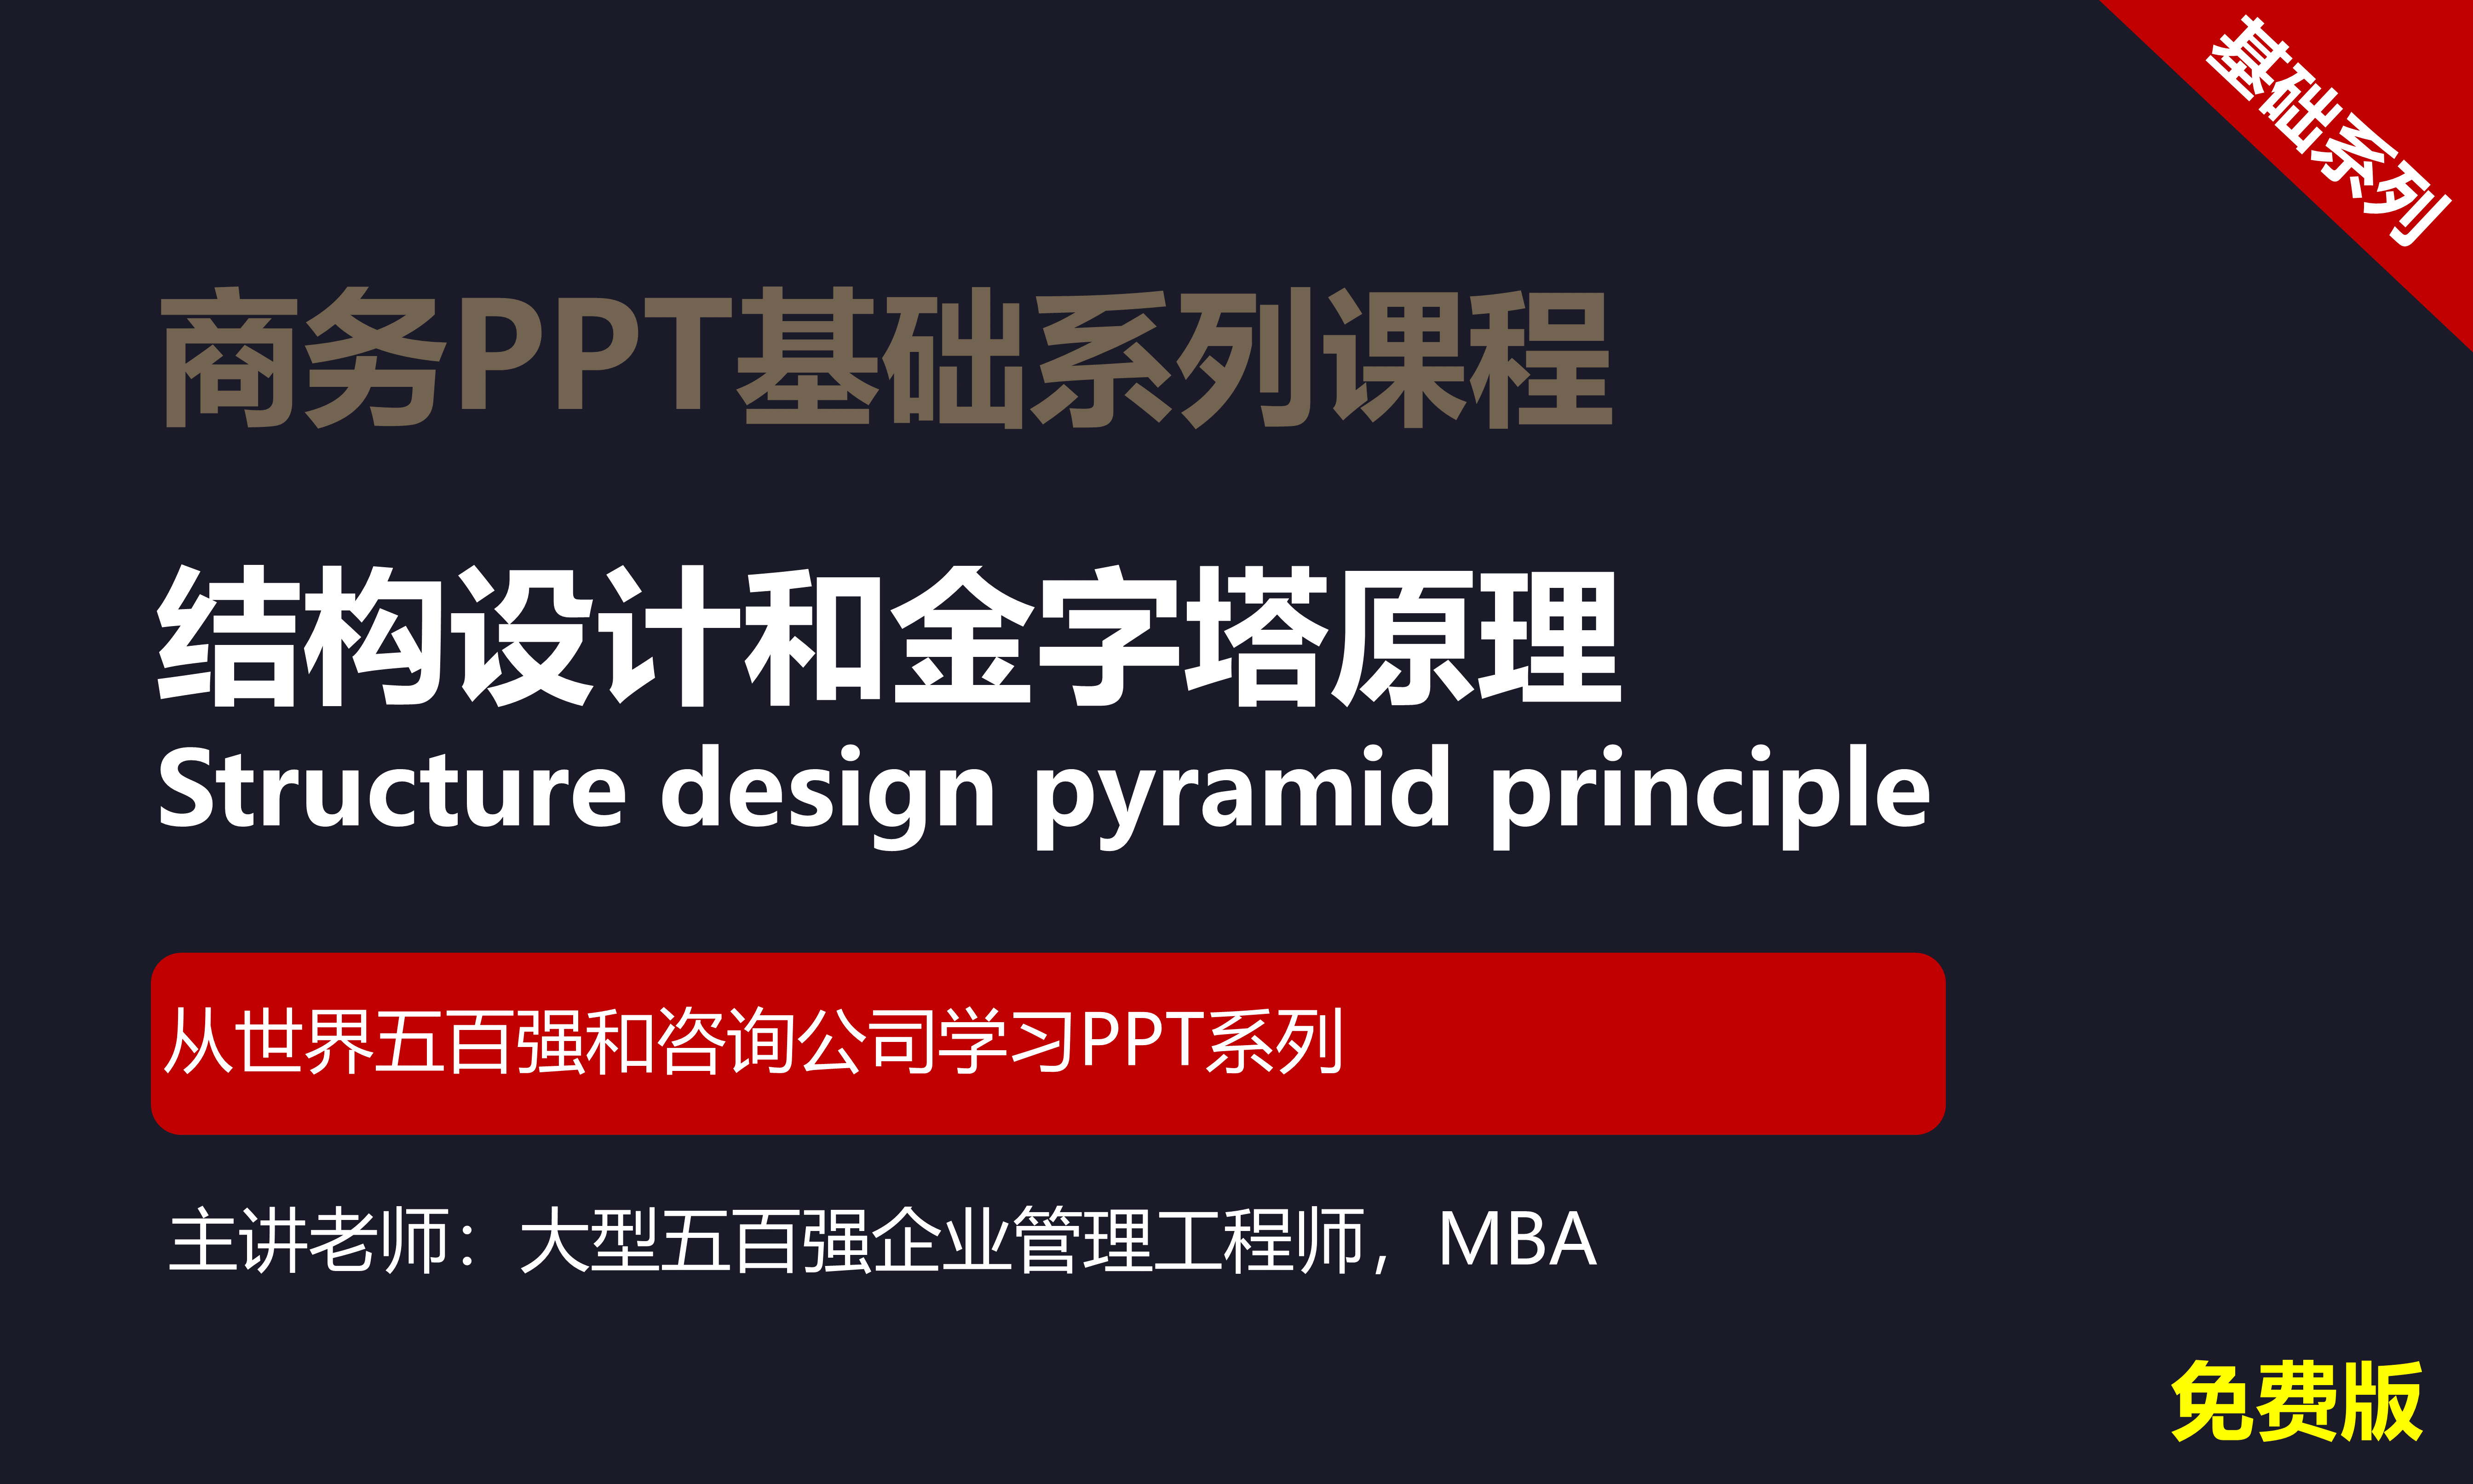 【司马懿】商务PPT设计基础篇02【结构设计】免费版